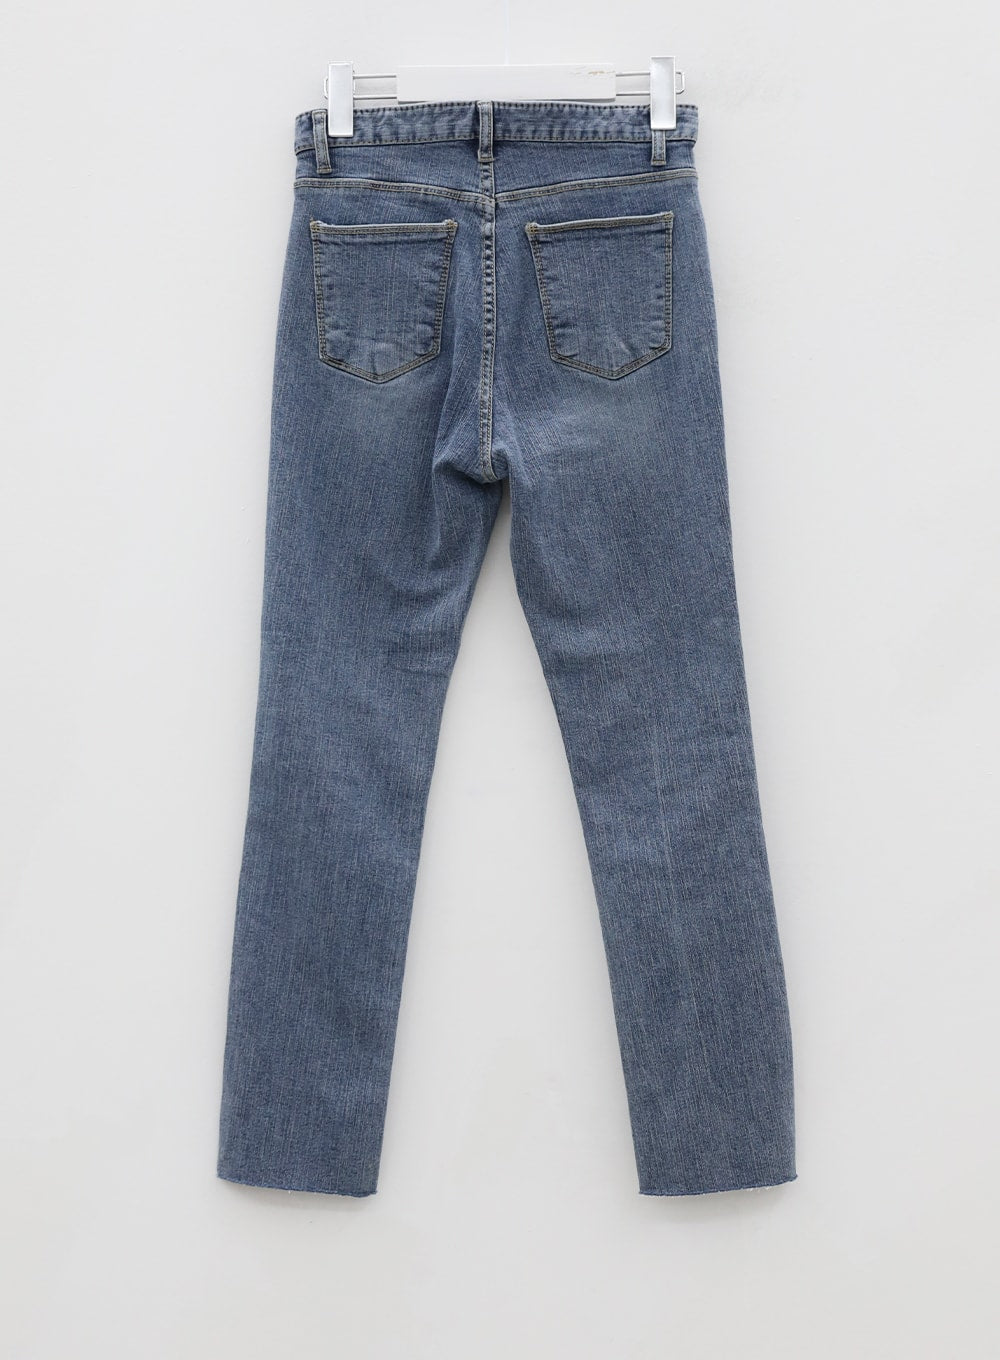 Vintage Style Skinny Jeans BU18